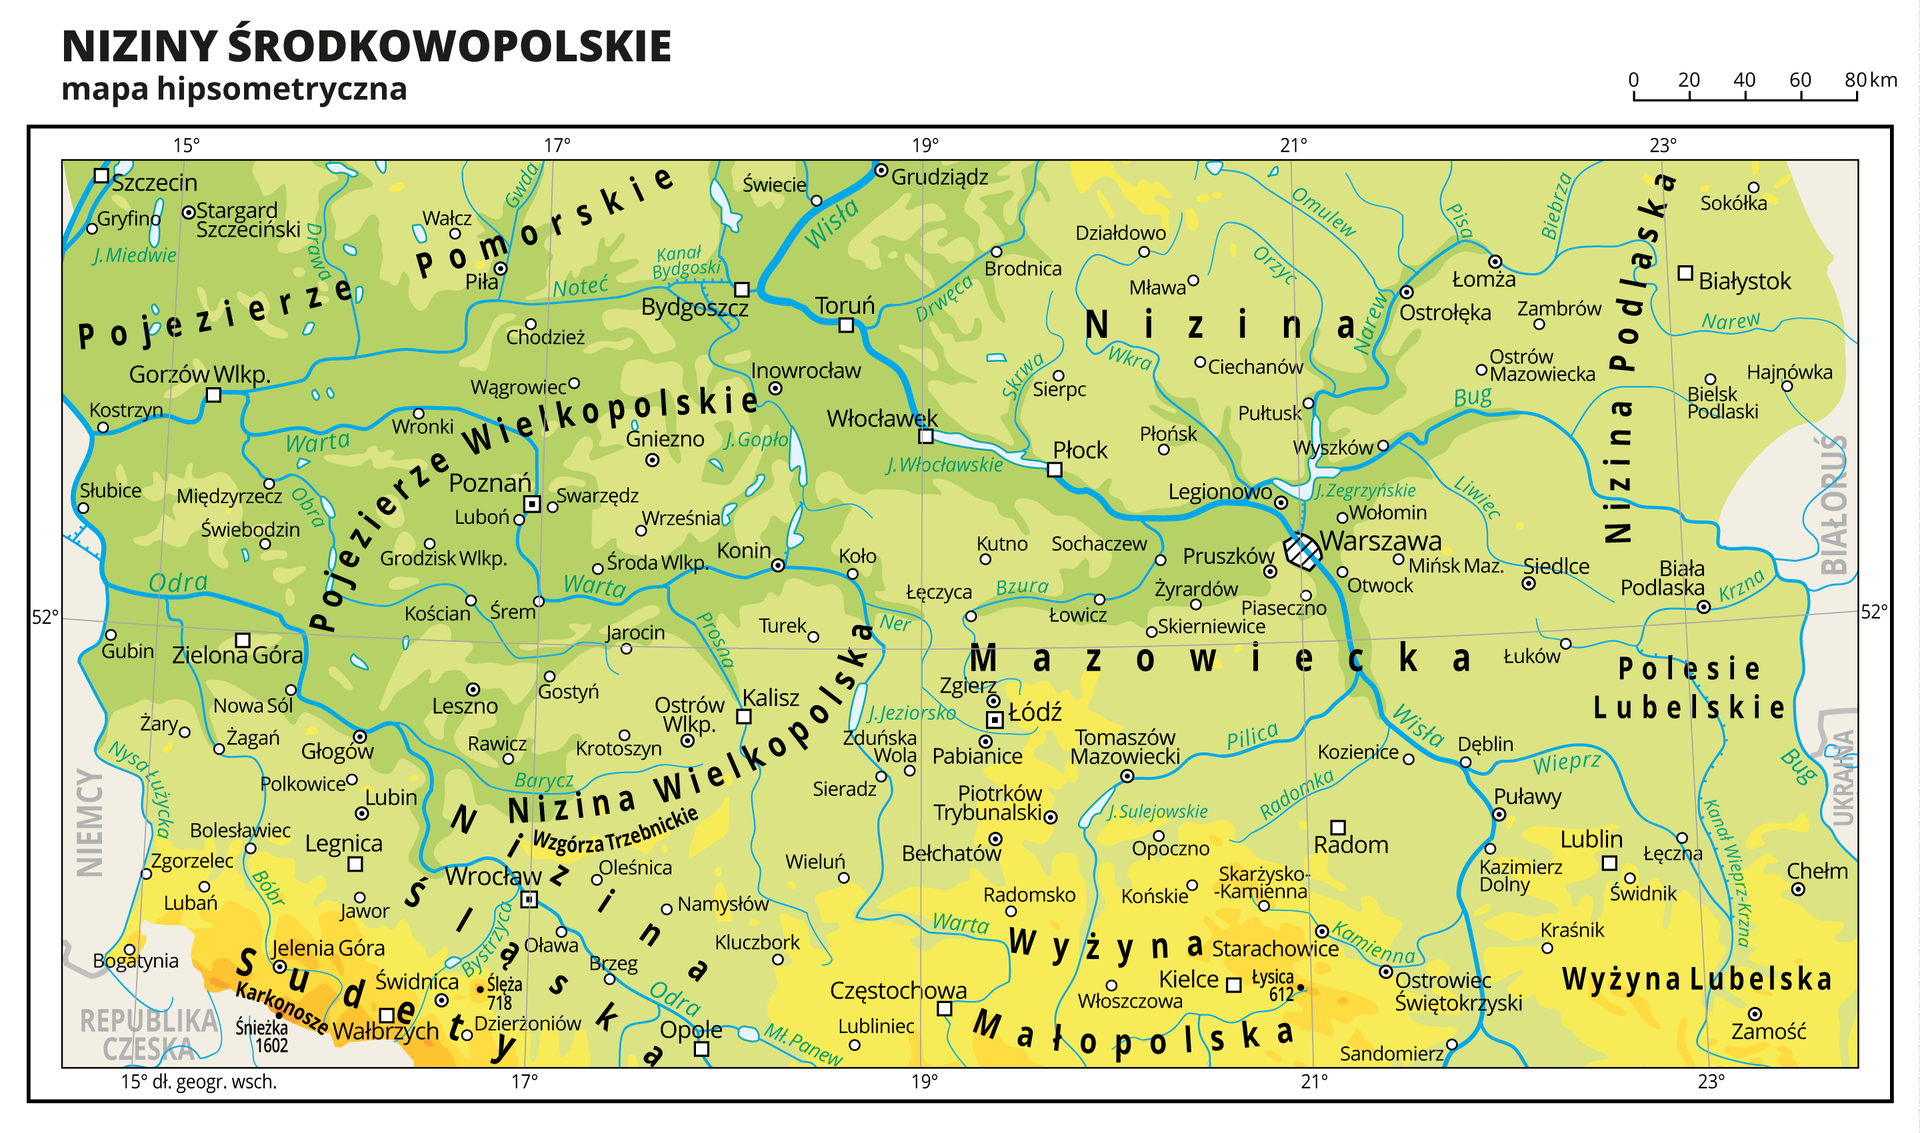 Ilustracja przedstawia mapę hipsometryczną Nizin Środkowopolskich. Na mapie dominuje kolor zielony oznaczający niziny i żółty – oznaczający wyżyny. Oznaczono i opisano miasta, rzeki, jeziora i szczyty. Opisano pojezierza, niziny, wyżyny, góry i inne krainy geograficzne oraz państwa sąsiadujące z Polską. Dookoła mapy w białej ramce opisano współrzędne geograficzne co dwa stopnie.